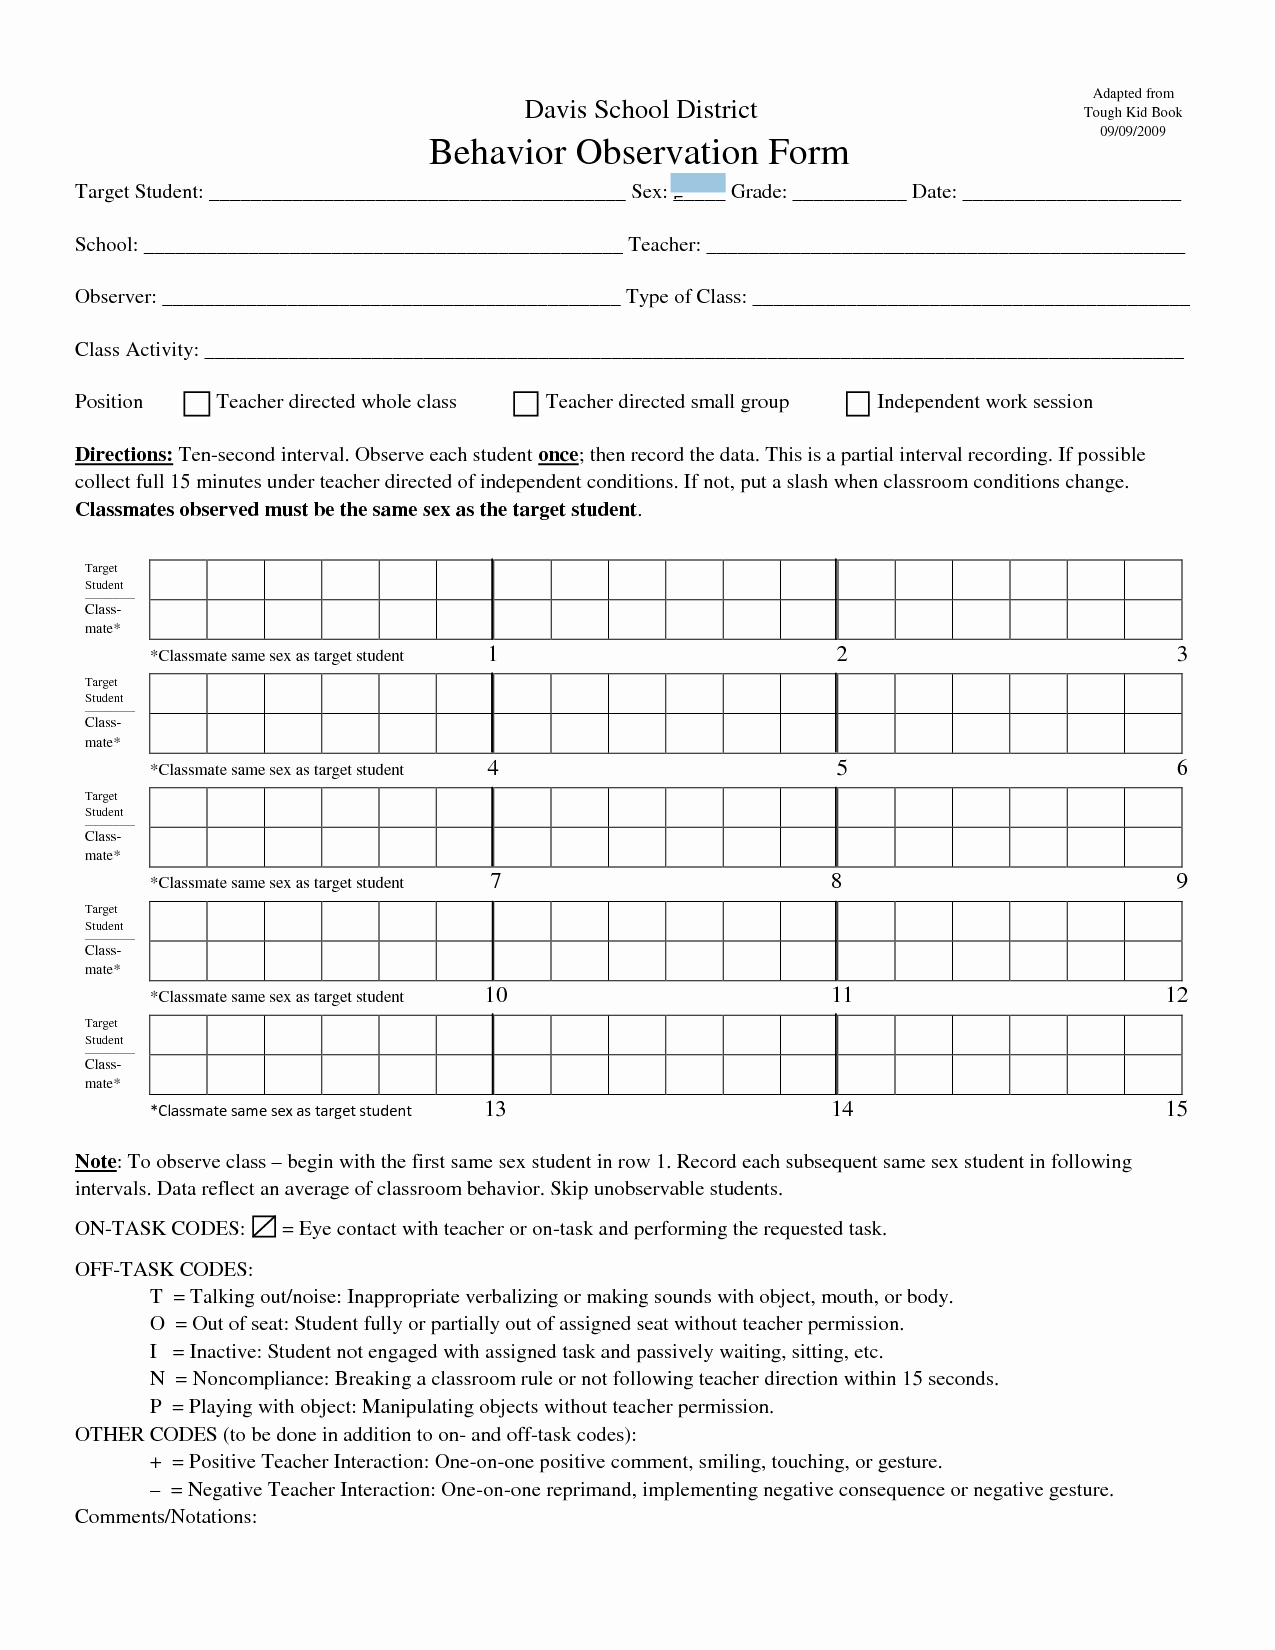 Preschool Teacher Observation form Template Awesome Student Behavior Observation form assessment